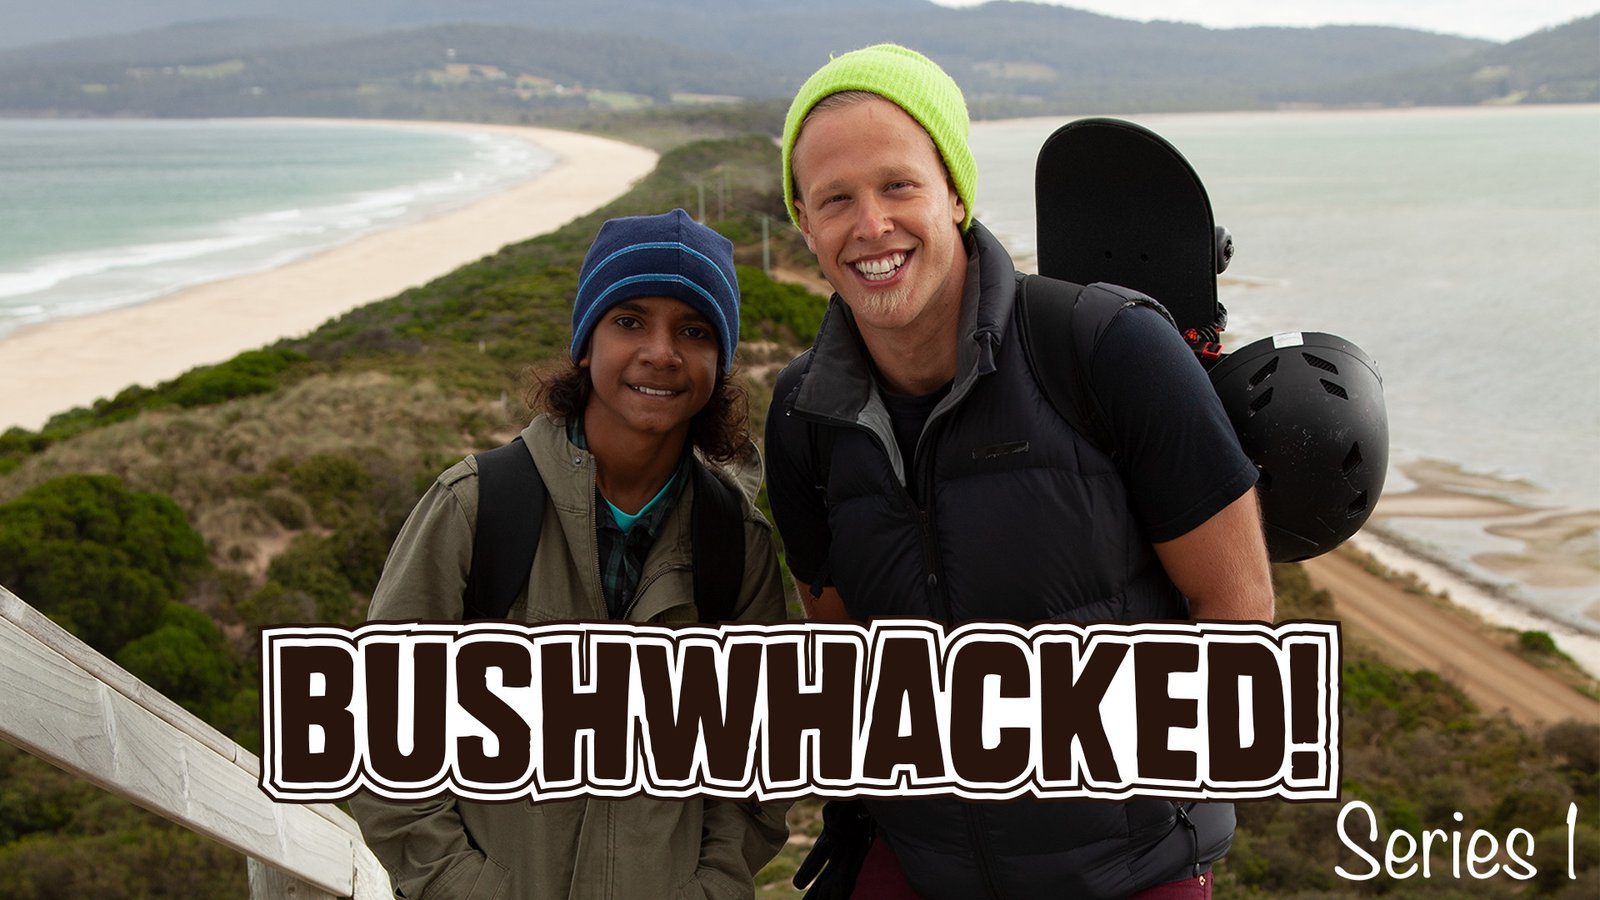 Bushwhacked! - Series 1